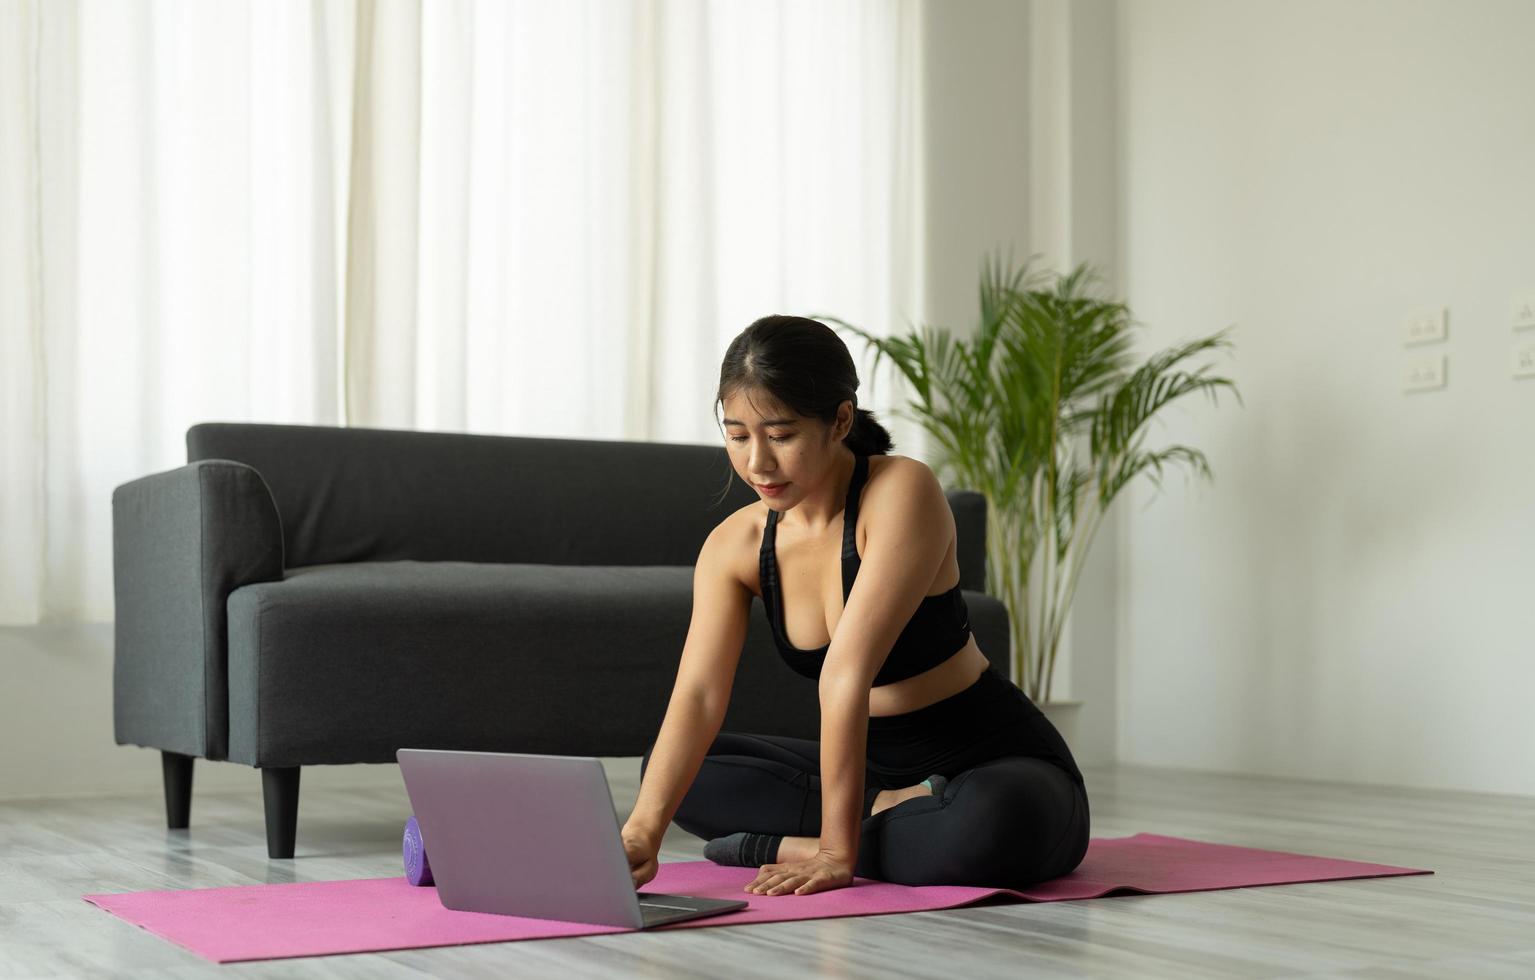 Aziatische vrouw met laptopcomputer bij yogastudio - fitness, technologie en gezond levensstijlconcept foto